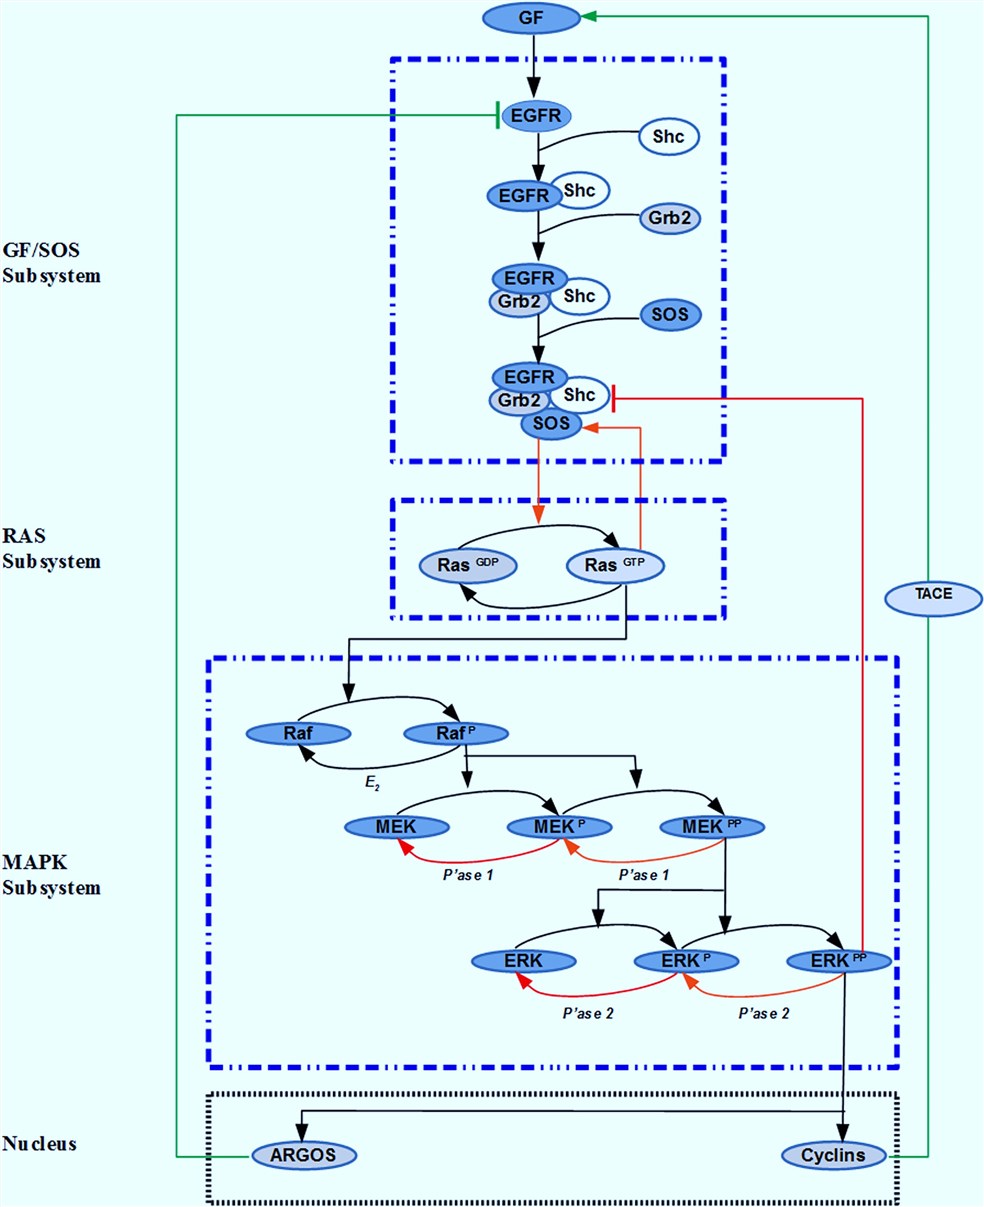 The ERK signaling pathway